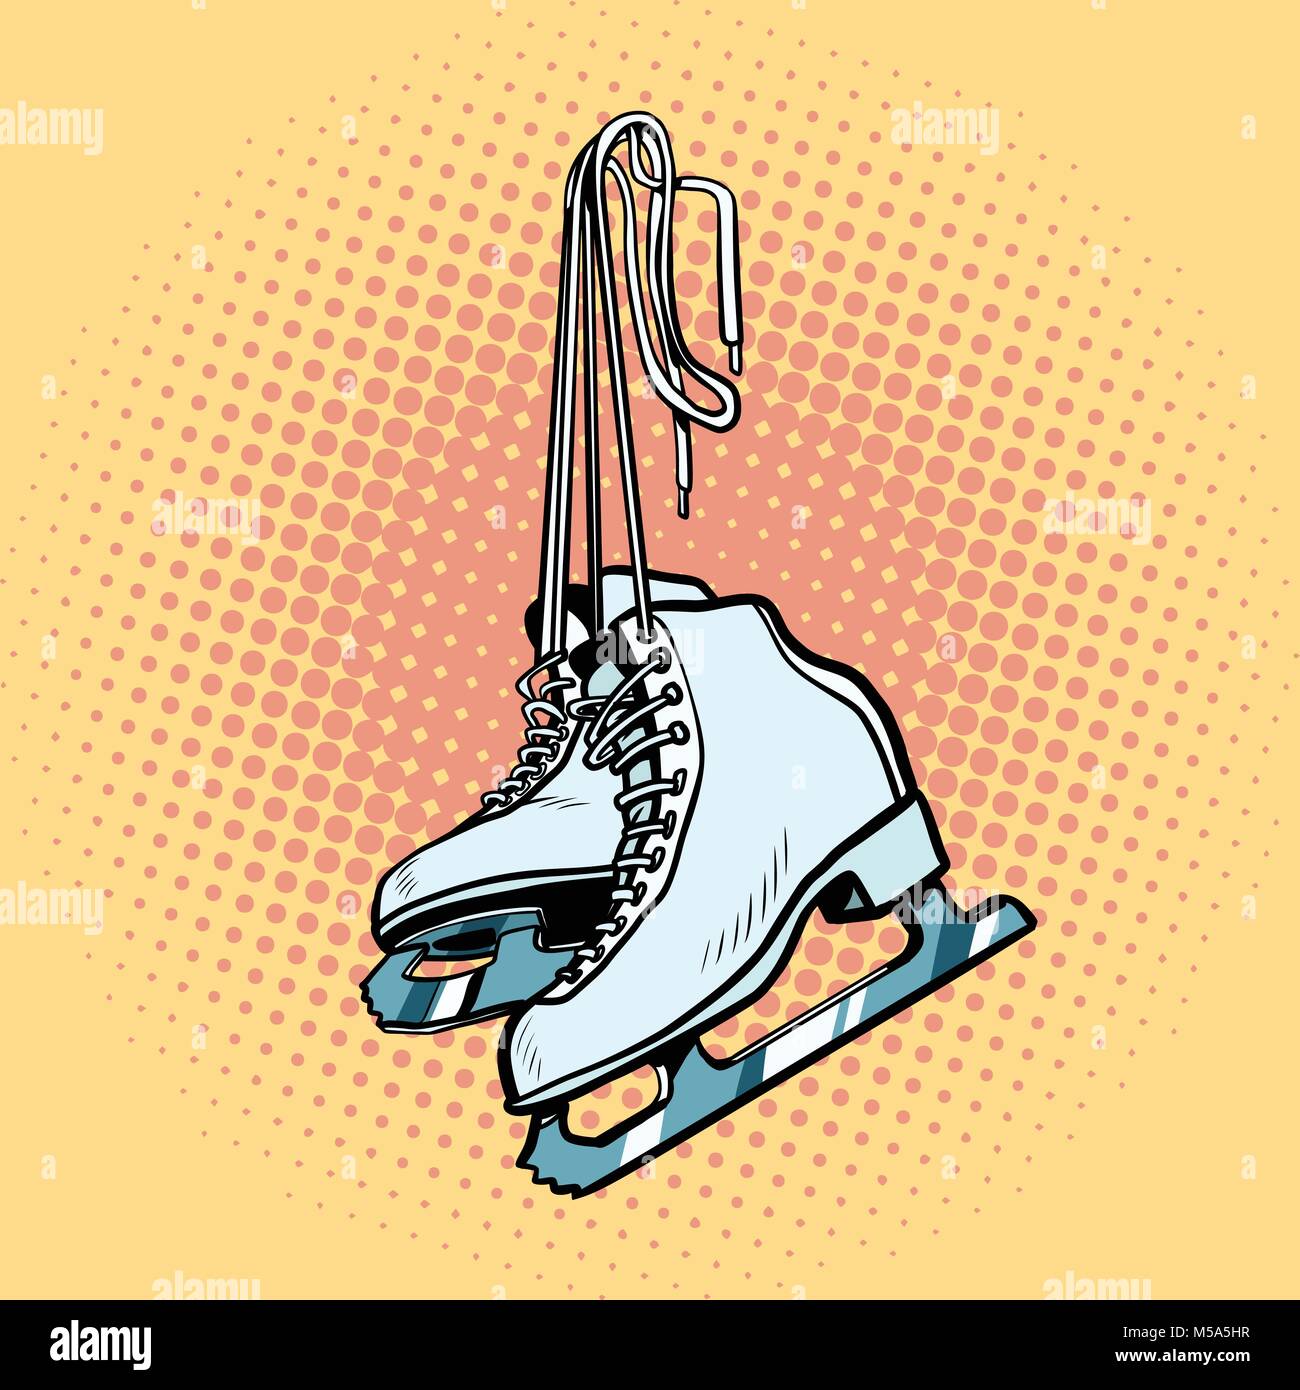 Womens pattini da ghiaccio per il pattinaggio artistico, sport invernali. La Pop art retrò illustrazione vettoriale comic cartoon vector vintage kitsch disegno Illustrazione Vettoriale